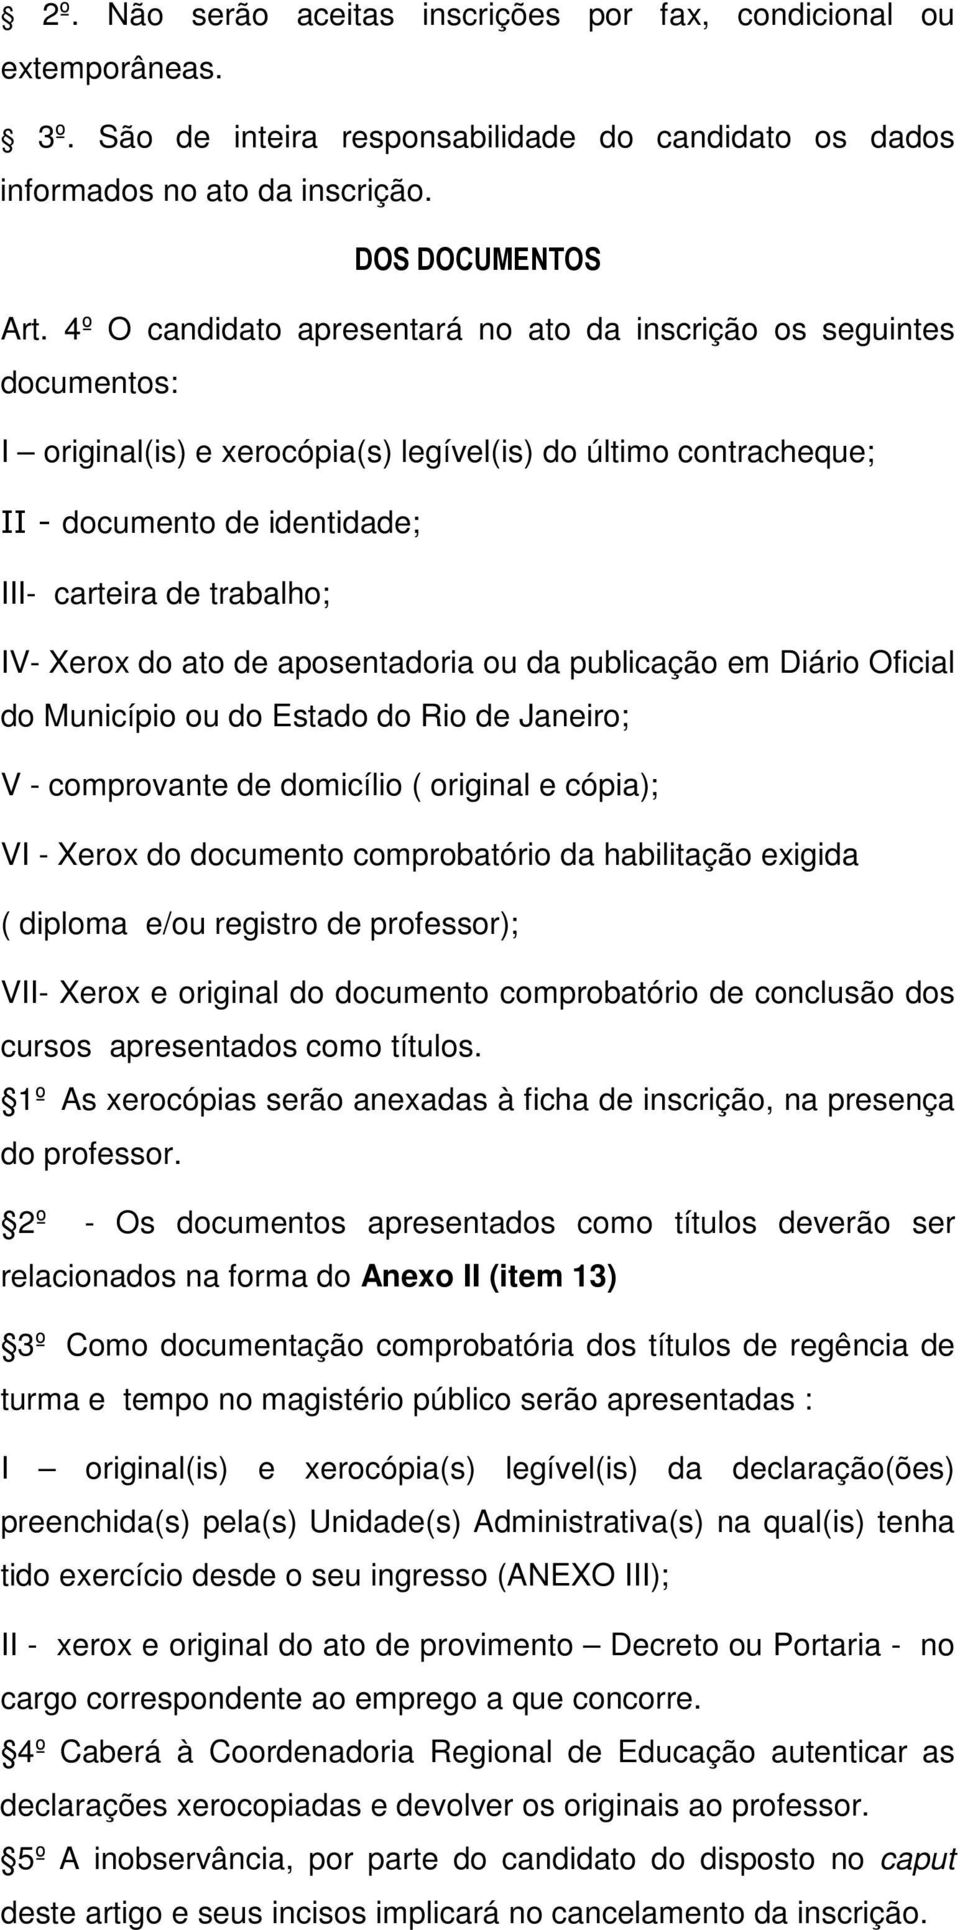 Xerox do ato de aposentadoria ou da publicação em Diário Oficial do Município ou do Estado do Rio de Janeiro; V - comprovante de domicílio ( original e cópia); VI - Xerox do documento comprobatório